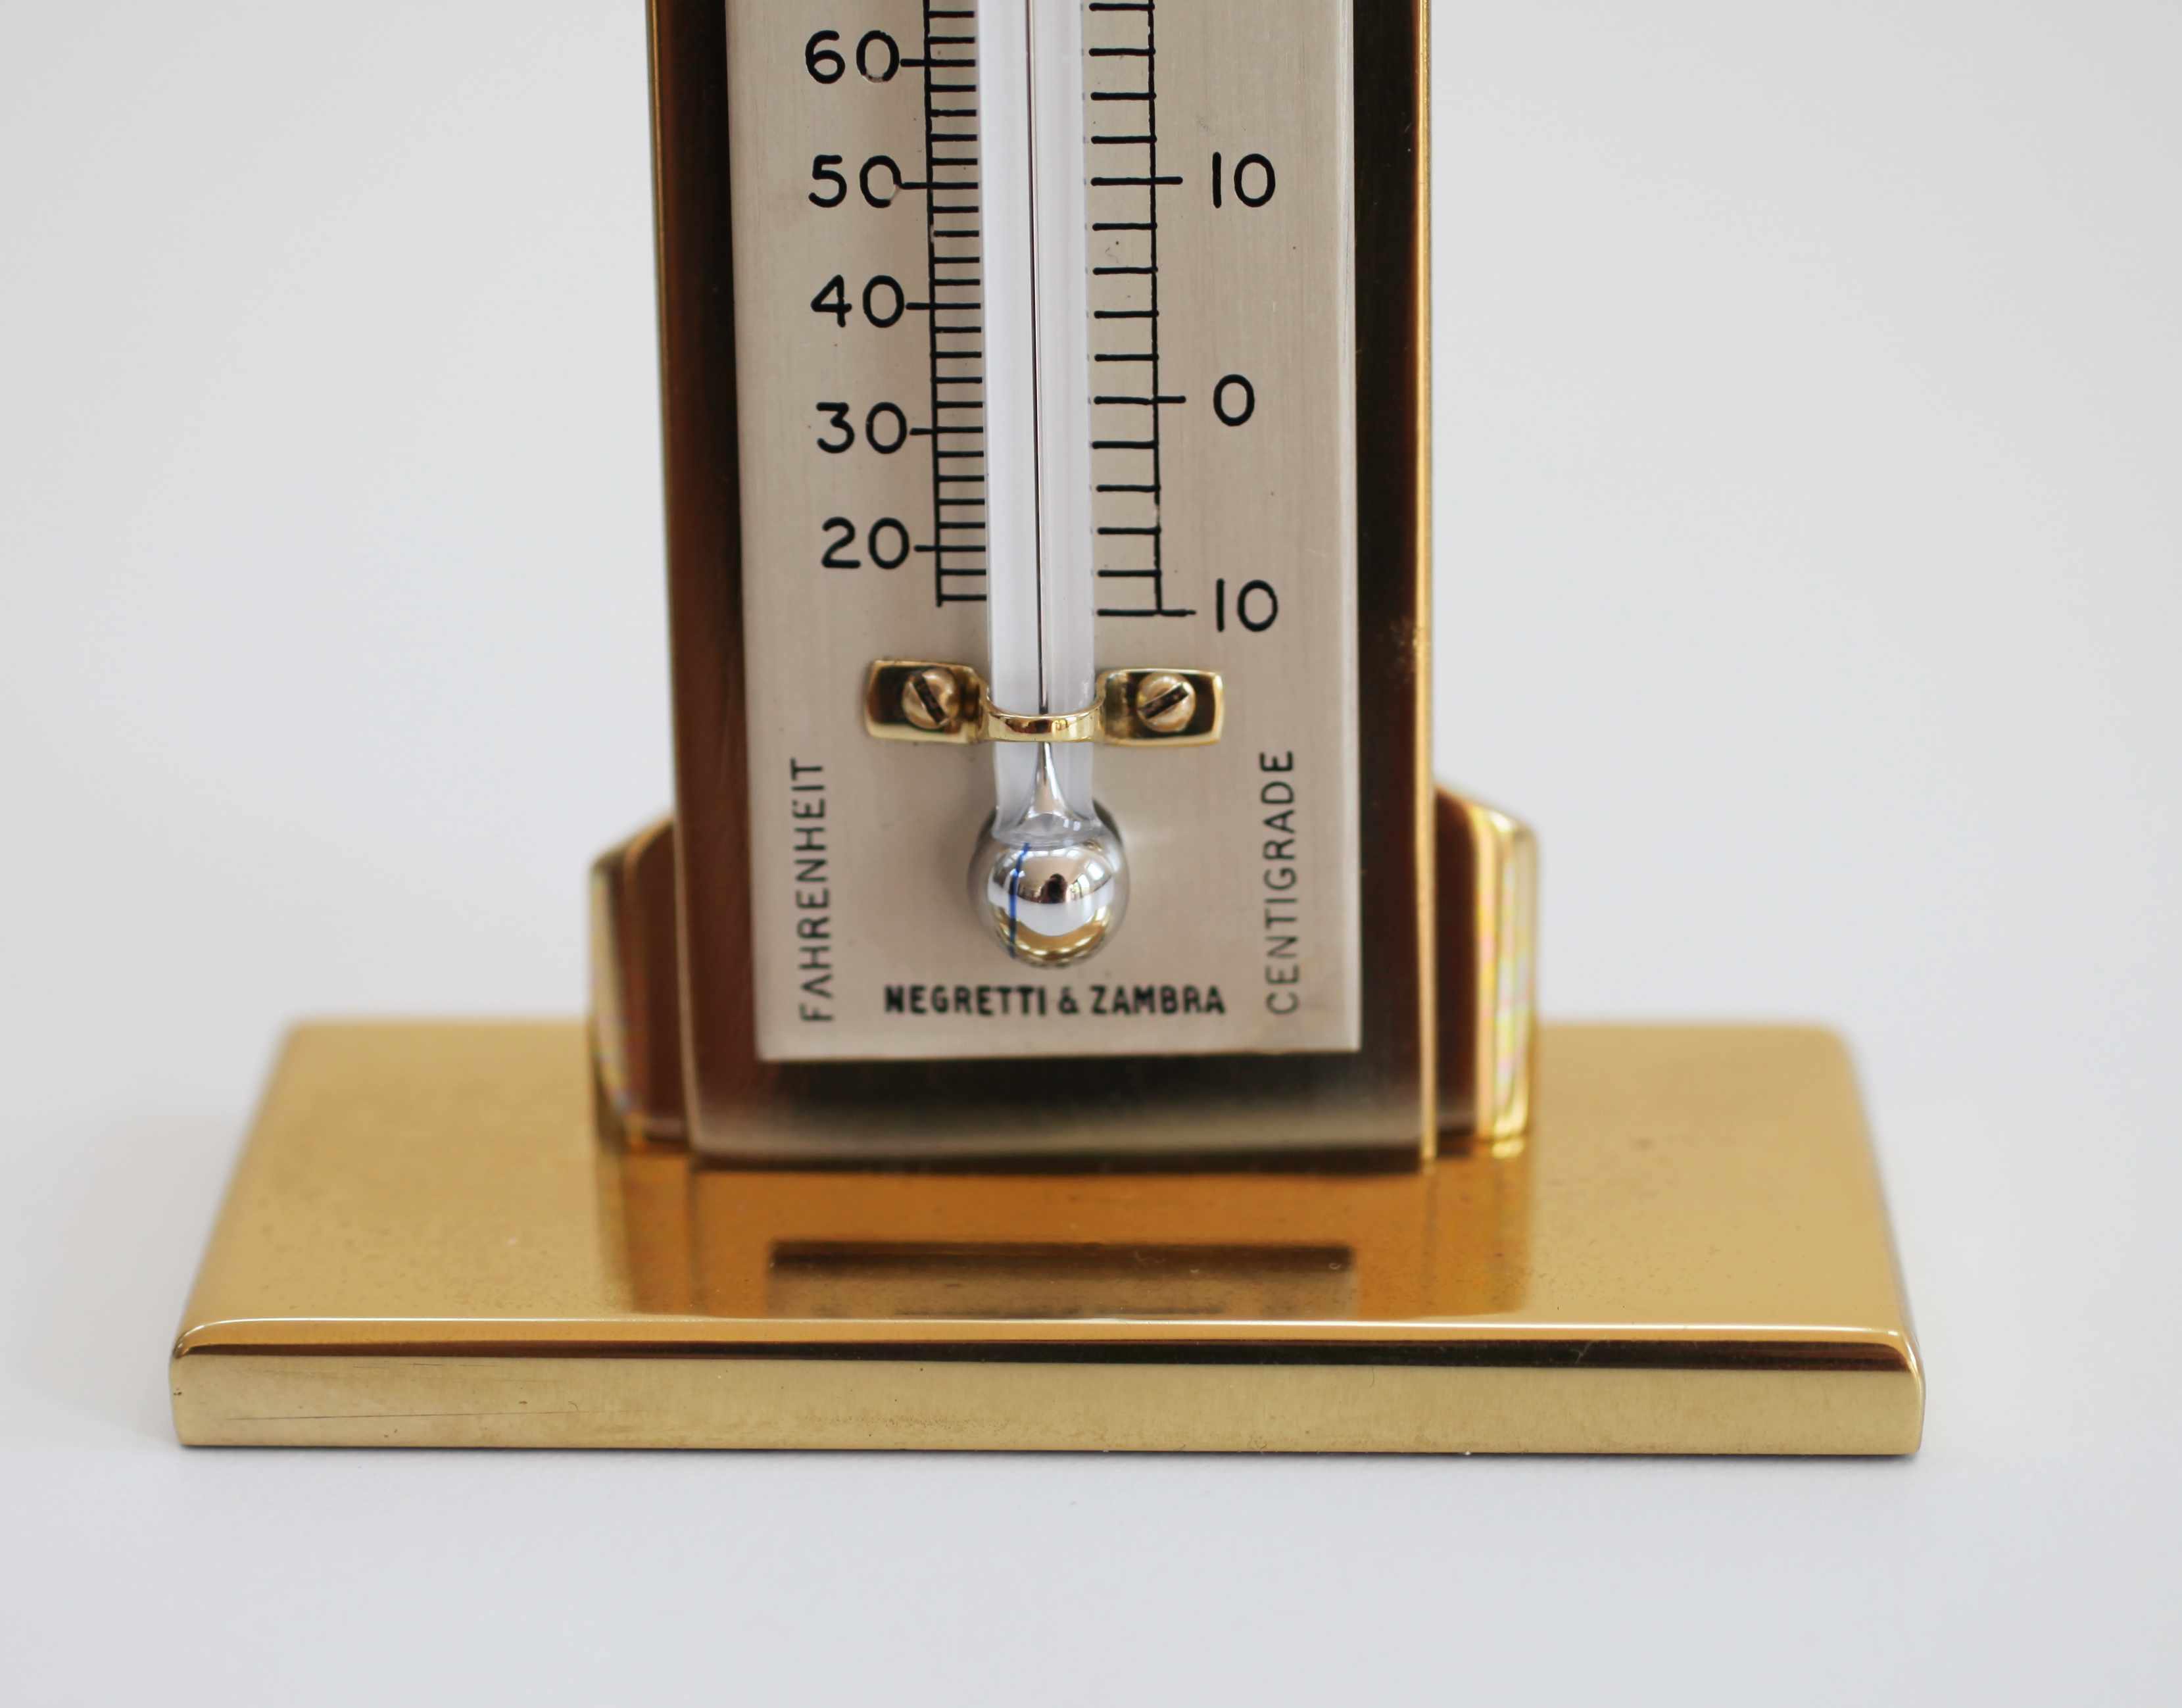 Art Deco Period Desk Thermometer by Negretti & Zambra London